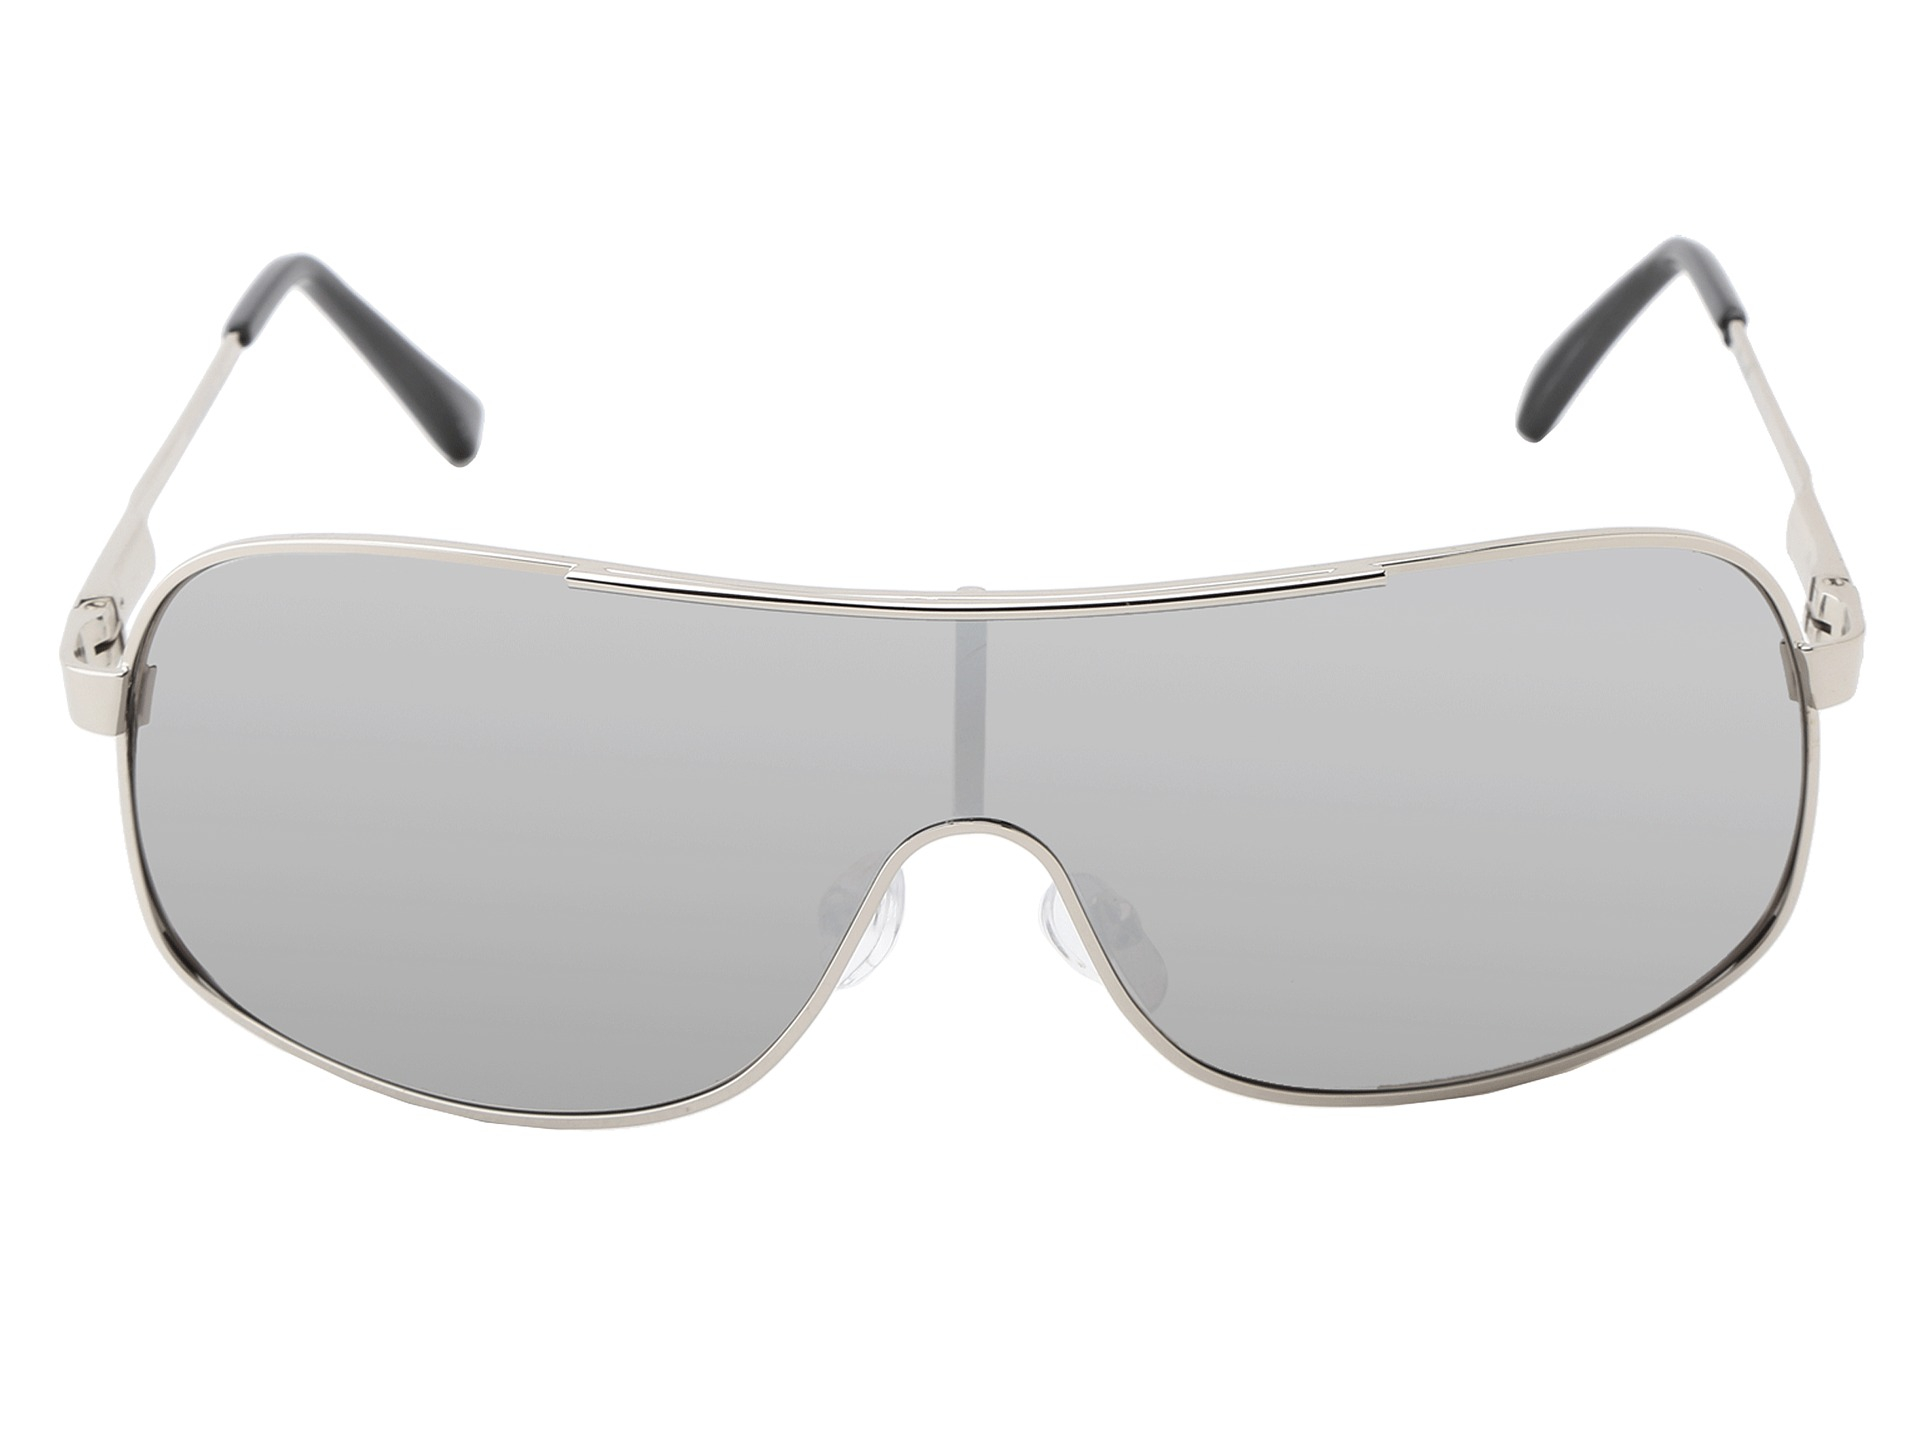 Steve madden sunglasses in Metallic for Men | Lyst